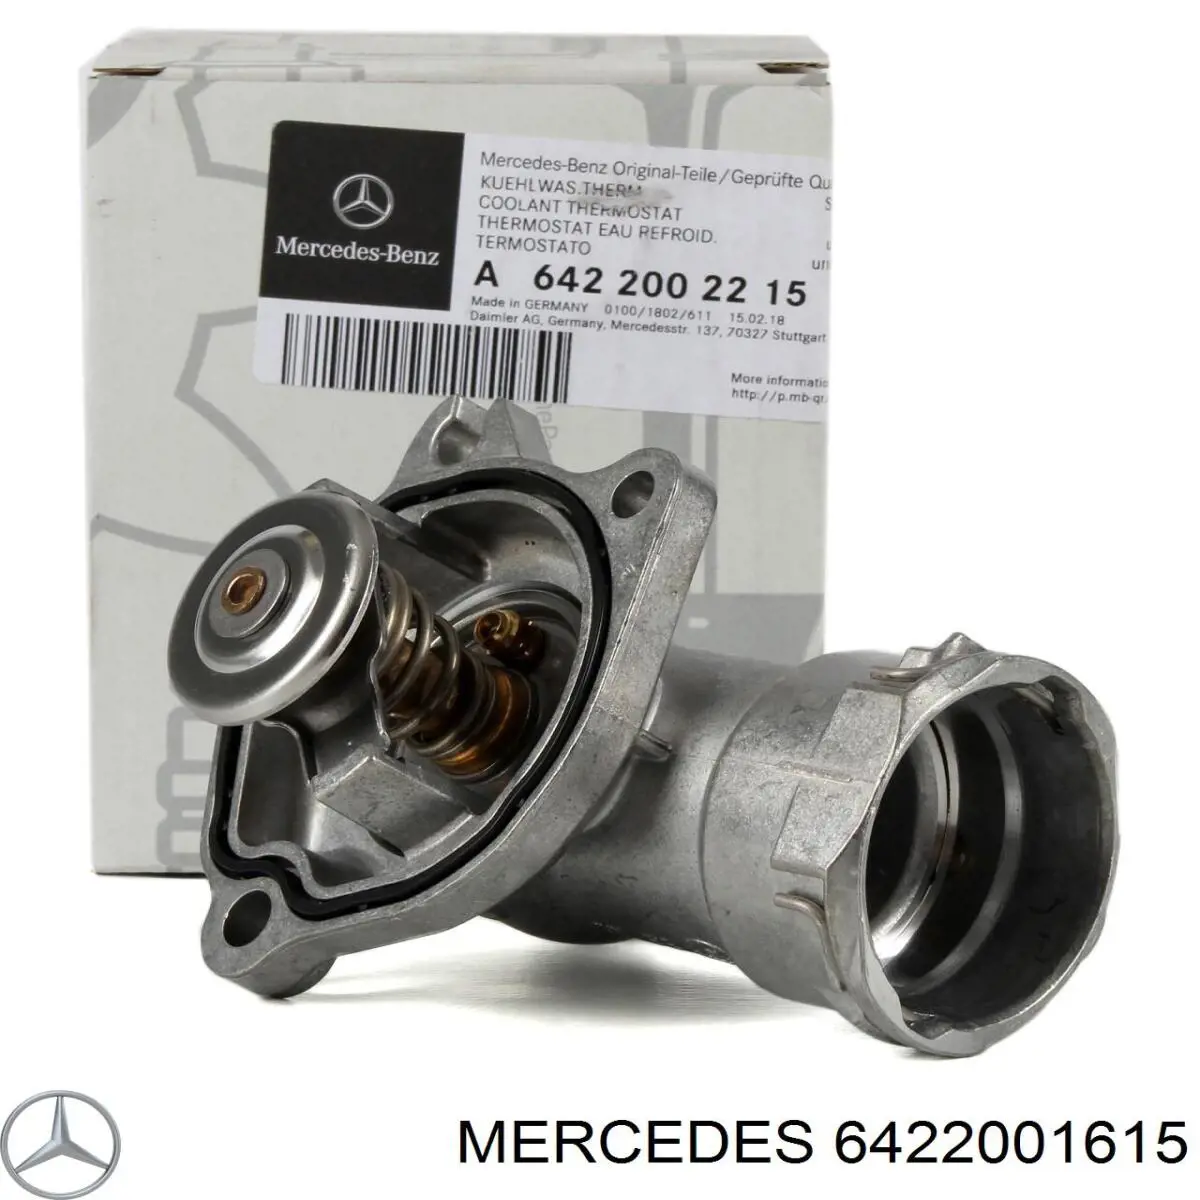 Авто термостат на Mercedes GLC (X253)